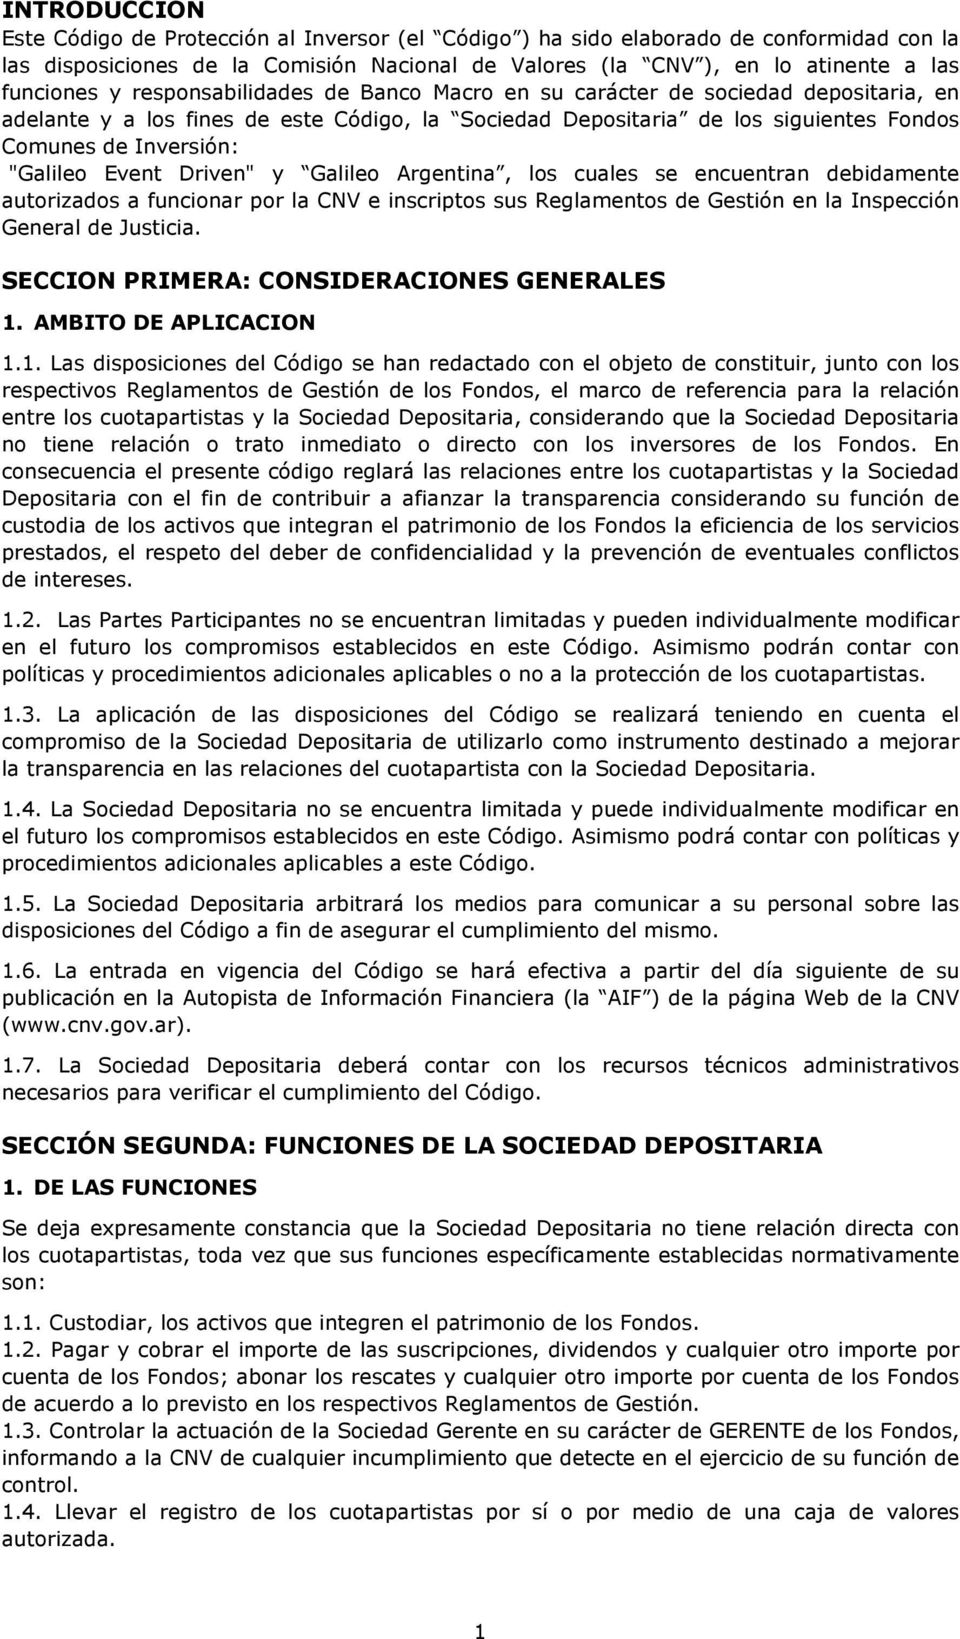 Event Driven" y Galileo Argentina, los cuales se encuentran debidamente autorizados a funcionar por la CNV e inscriptos sus Reglamentos de Gestión en la Inspección General de Justicia.